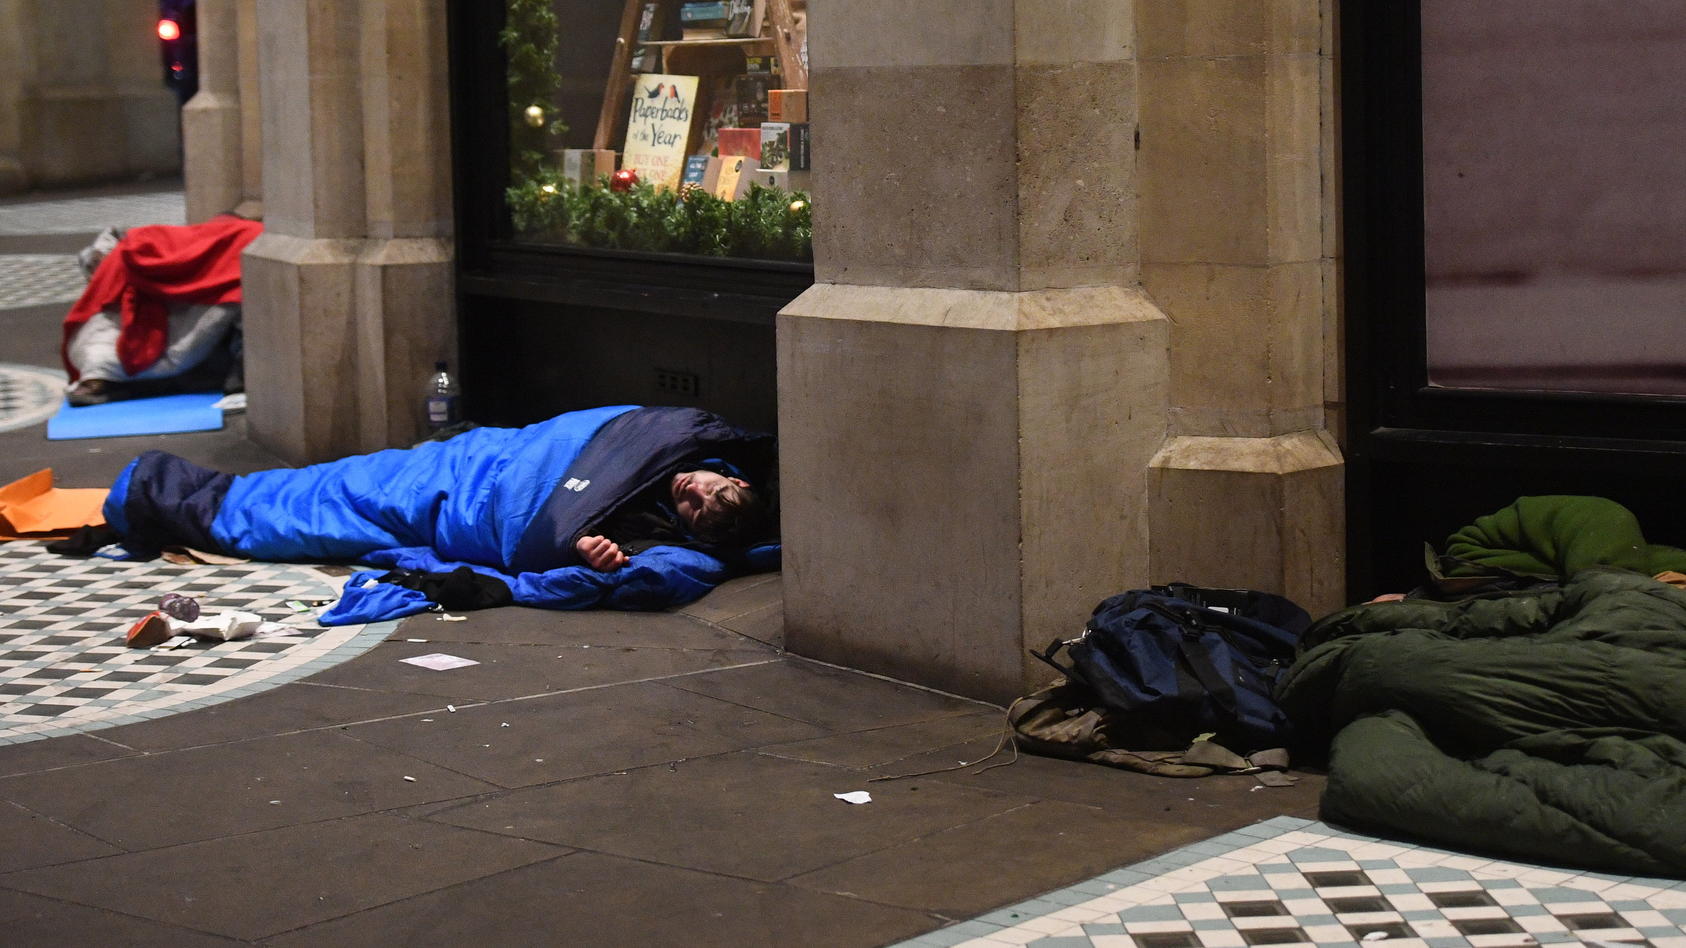 30.12.2018, Großbritannien, London: Obdachlose liegen in ihren Schlafsäcken an einem Gebäude im Zentrum Londons. Foto: Victoria Jones/PA Wire/dpa +++ dpa-Bildfunk +++